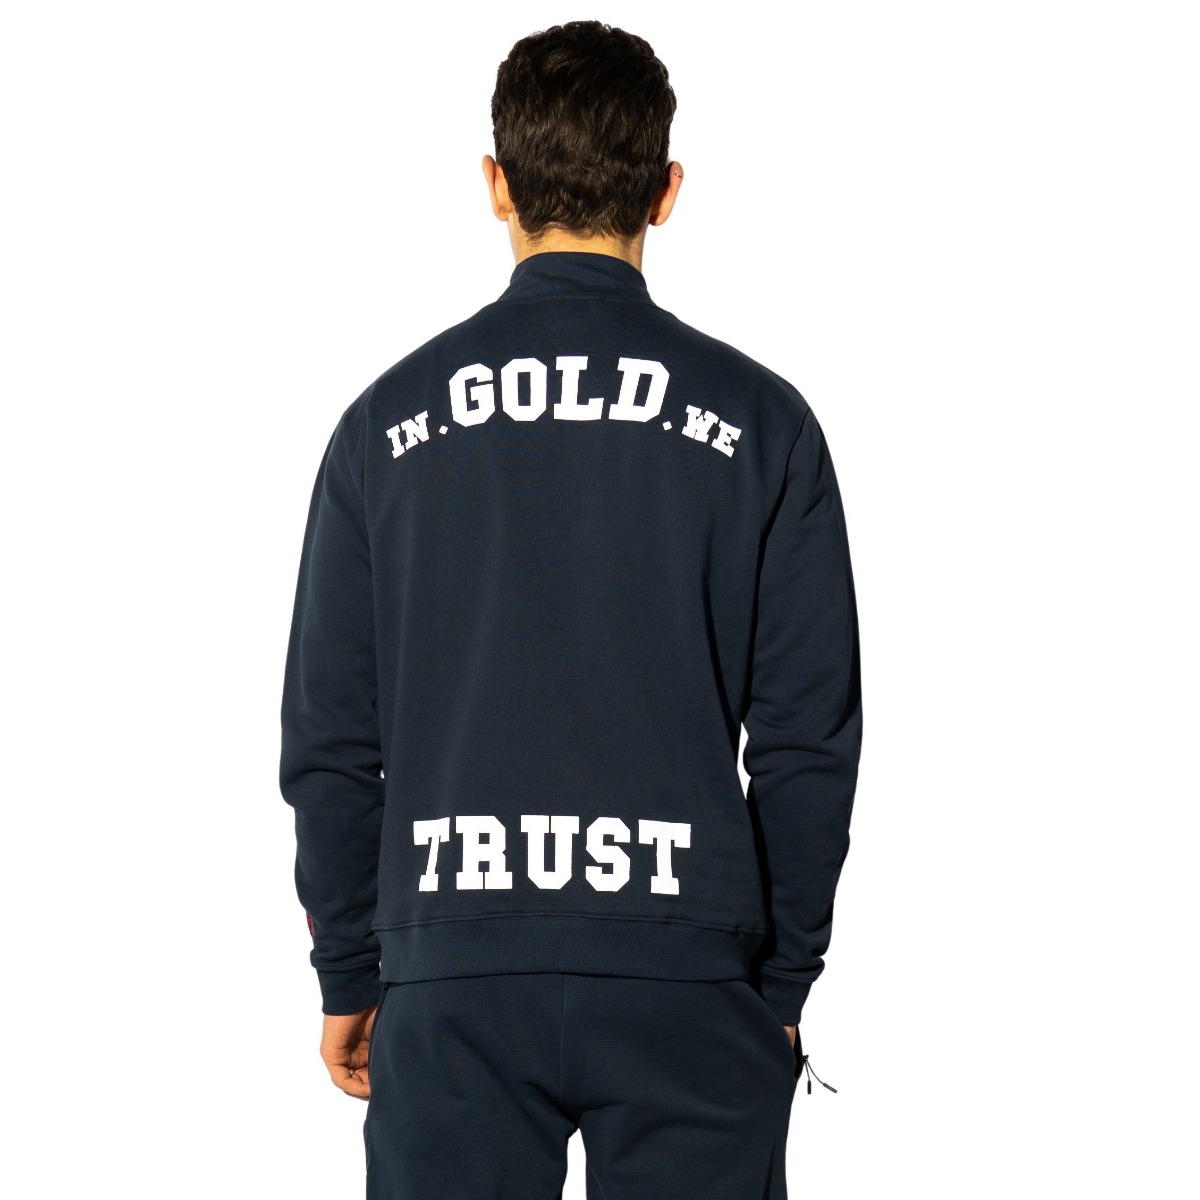 The Slim Half Zip Sweater In Gold We Trust